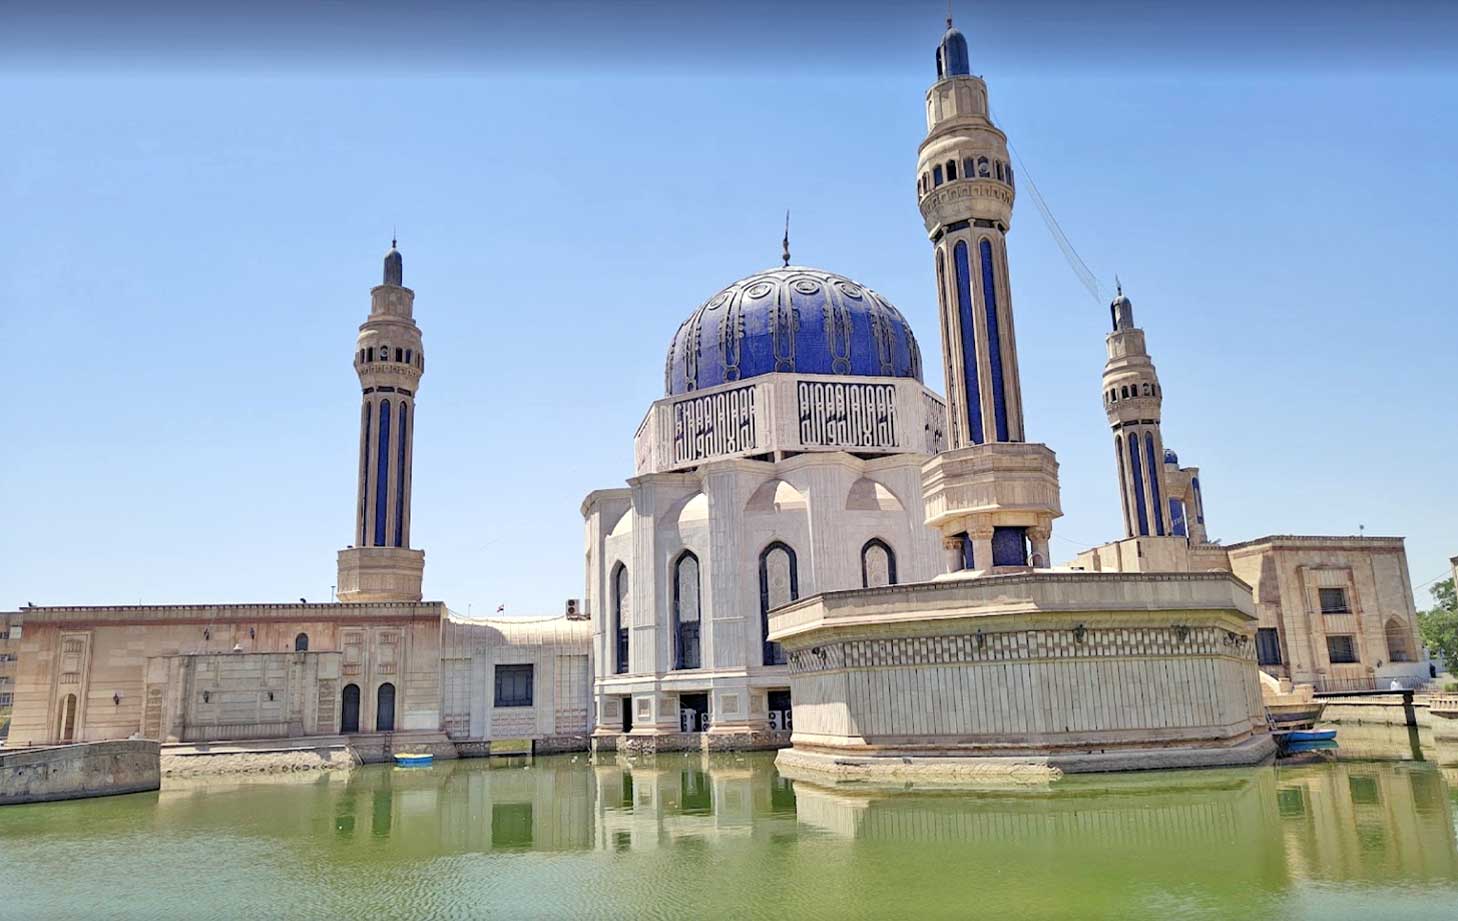 Umm al-Qura Mosque